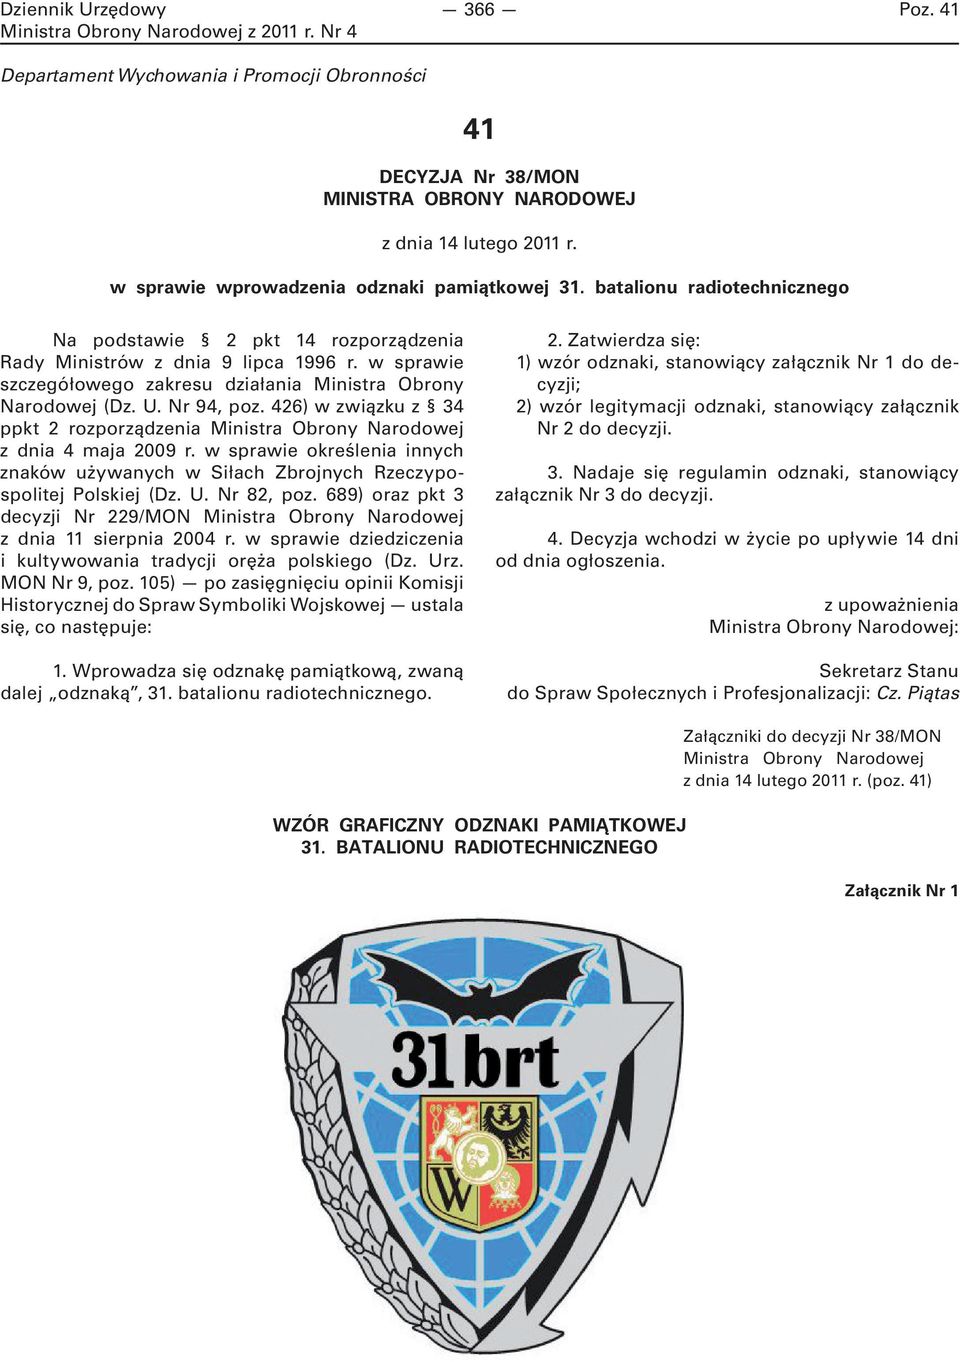 426) w związku z 34 ppkt 2 rozporządzenia Ministra Obrony Narodowej z dnia 4 maja 2009 r. w sprawie określenia innych znaków używanych w Siłach Zbrojnych Rzeczypospolitej Polskiej (Dz. U. Nr 82, poz.